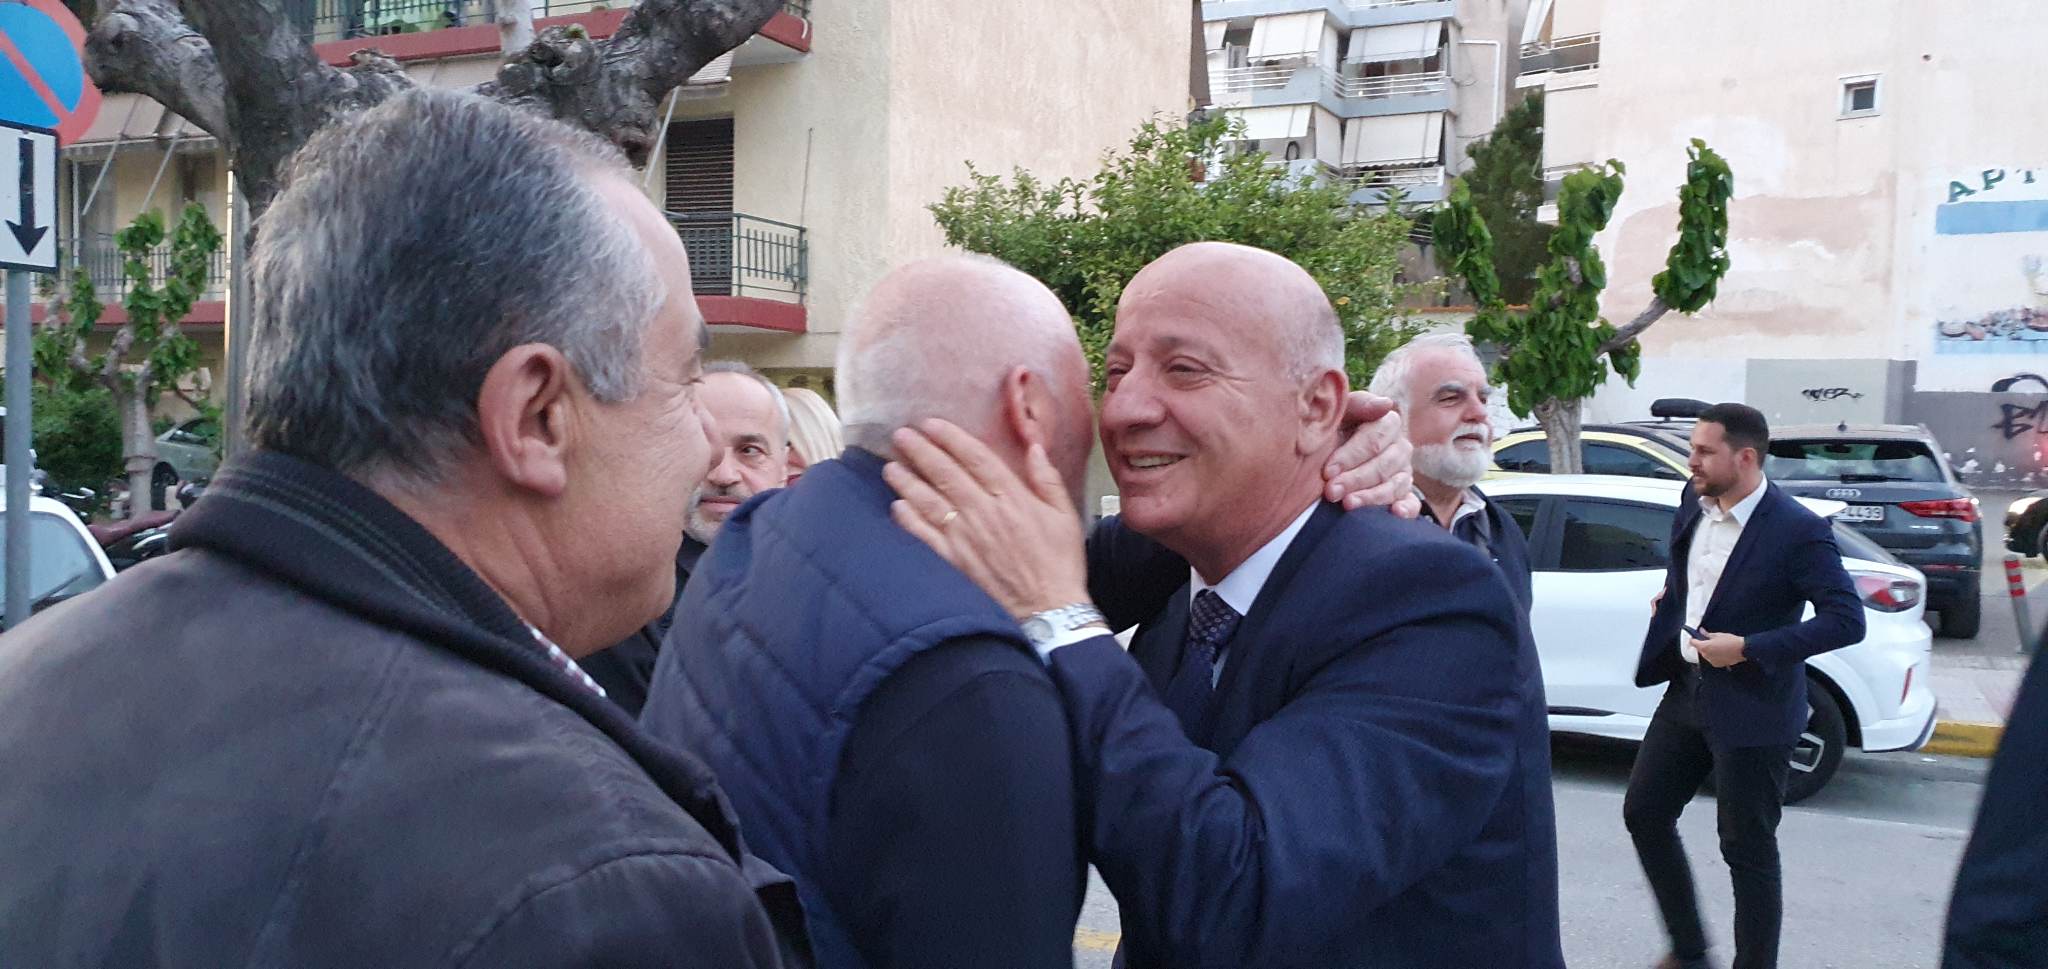 Θανάσης Κατερινόπουλος: Με απόλυτη επιτυχία πραγματοποίησε την κεντρική προεκλογική του ομιλία στο Ίλιον